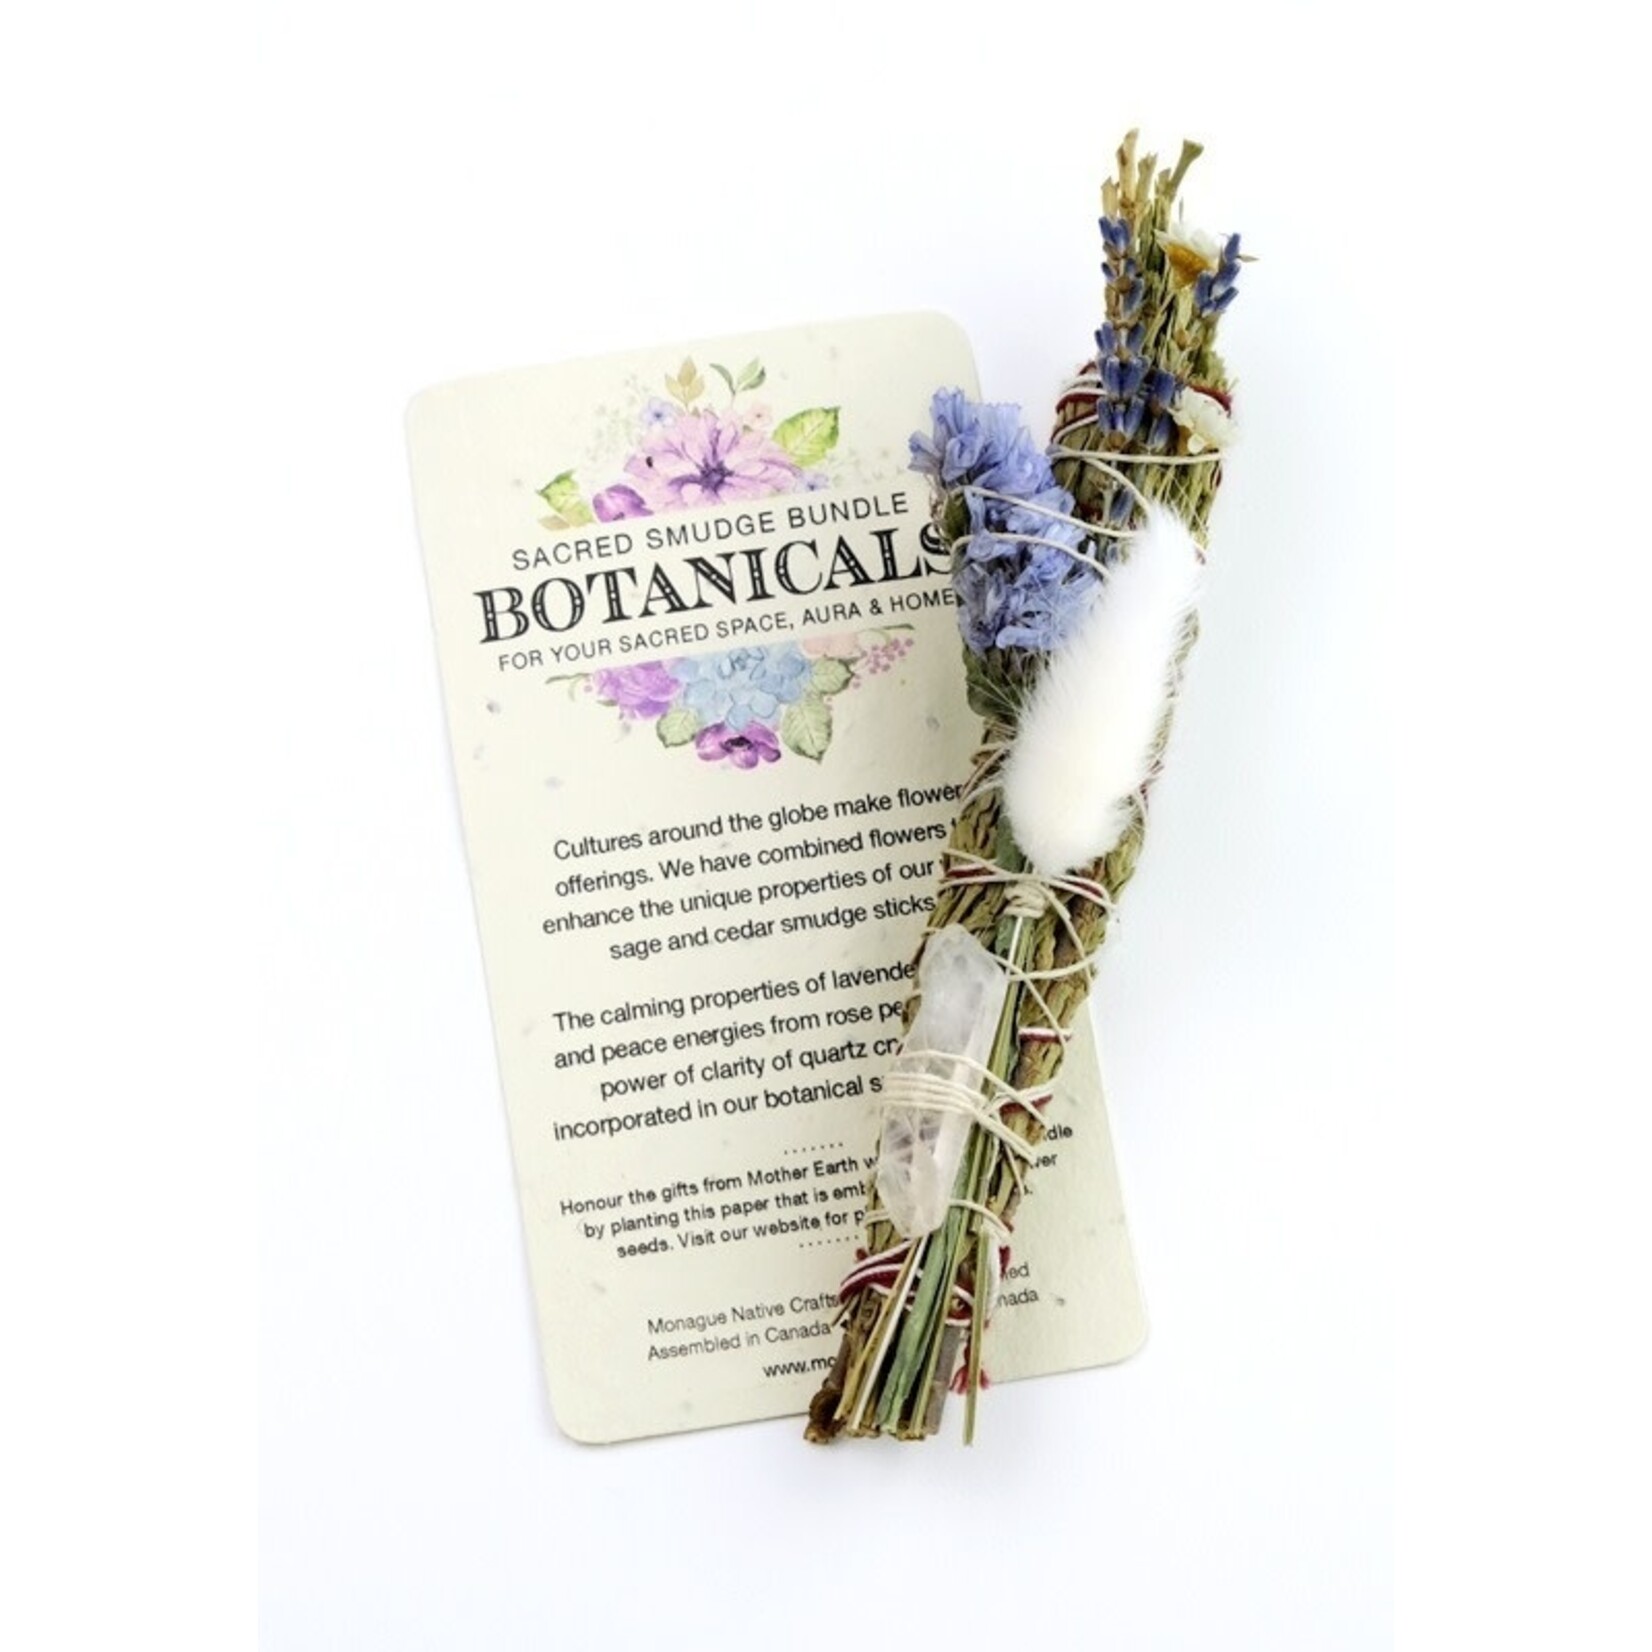 Monague Monague "Botanicals" Sacred Smudge Bundle (Sage/Lavender/Quartz)